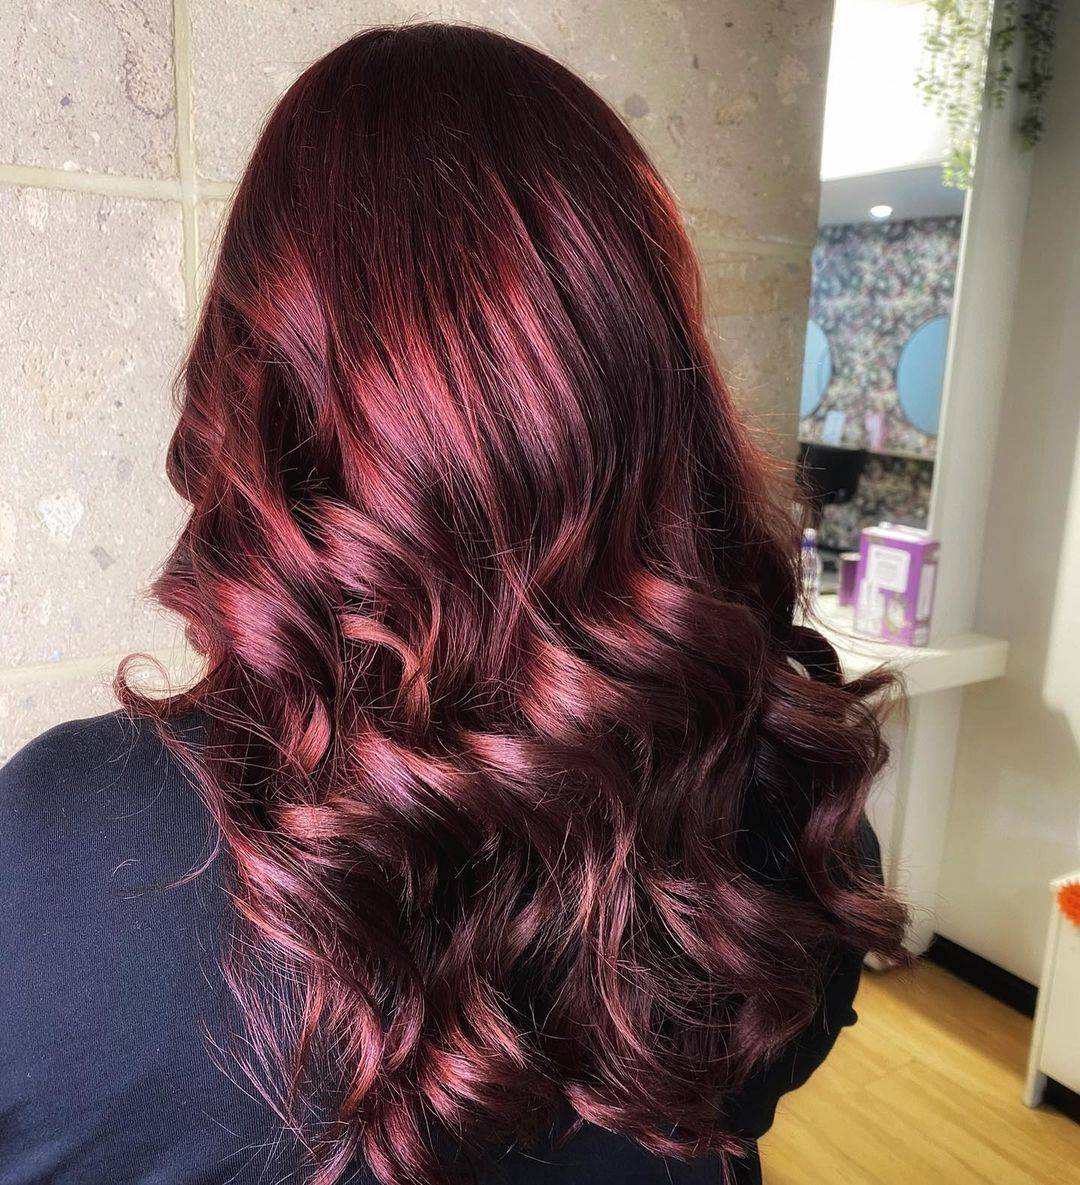 Burgundy hair color 311 burgundy hair color | burgundy hair color for women | burgundy hair color highlights Burgundy Hair Color